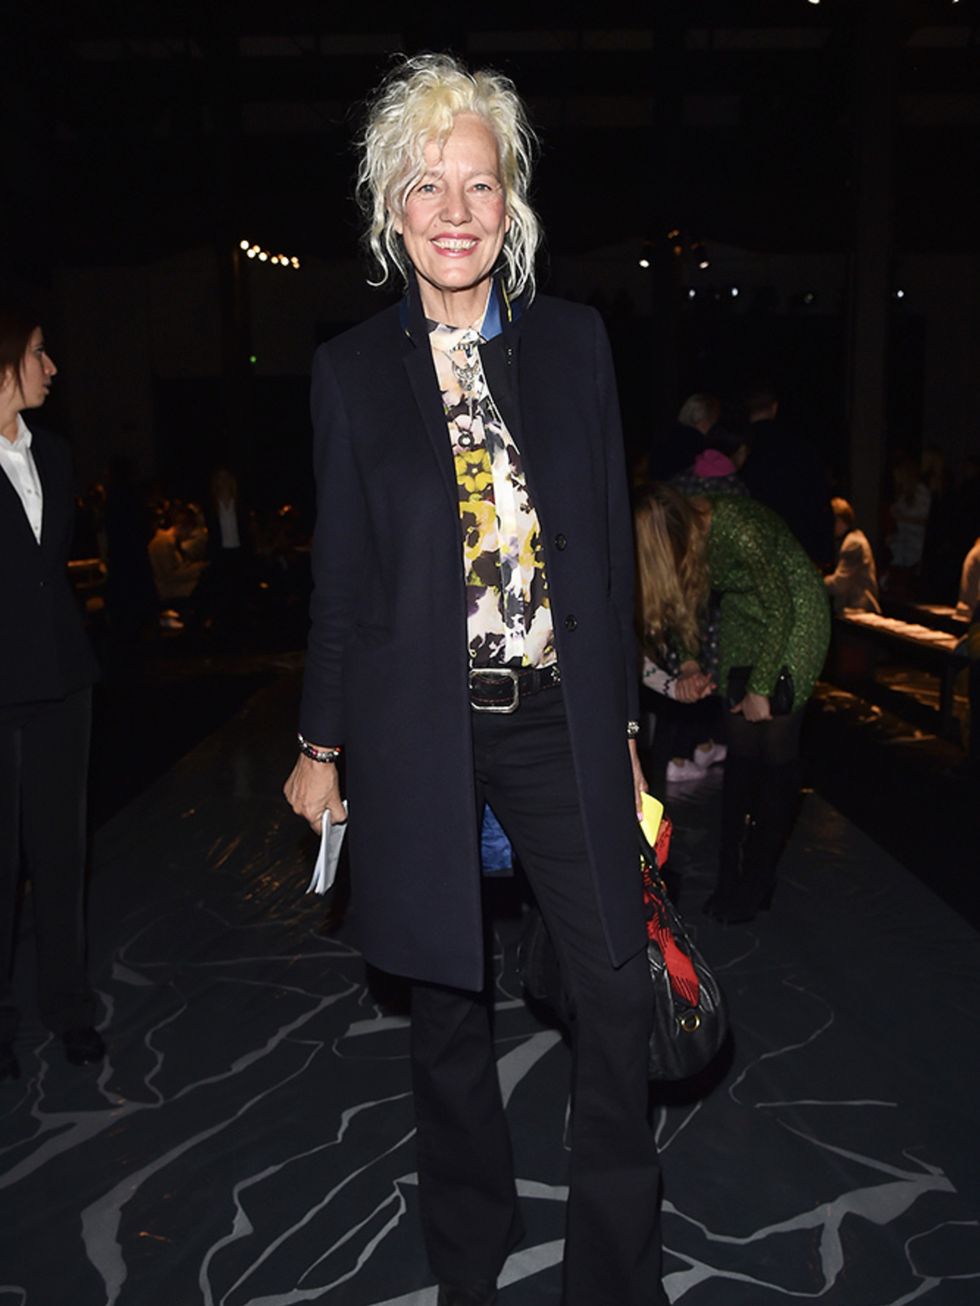 Ellen von Unwerth attends the Missoni a/w 2015 fashion show, Milan, March 2015.